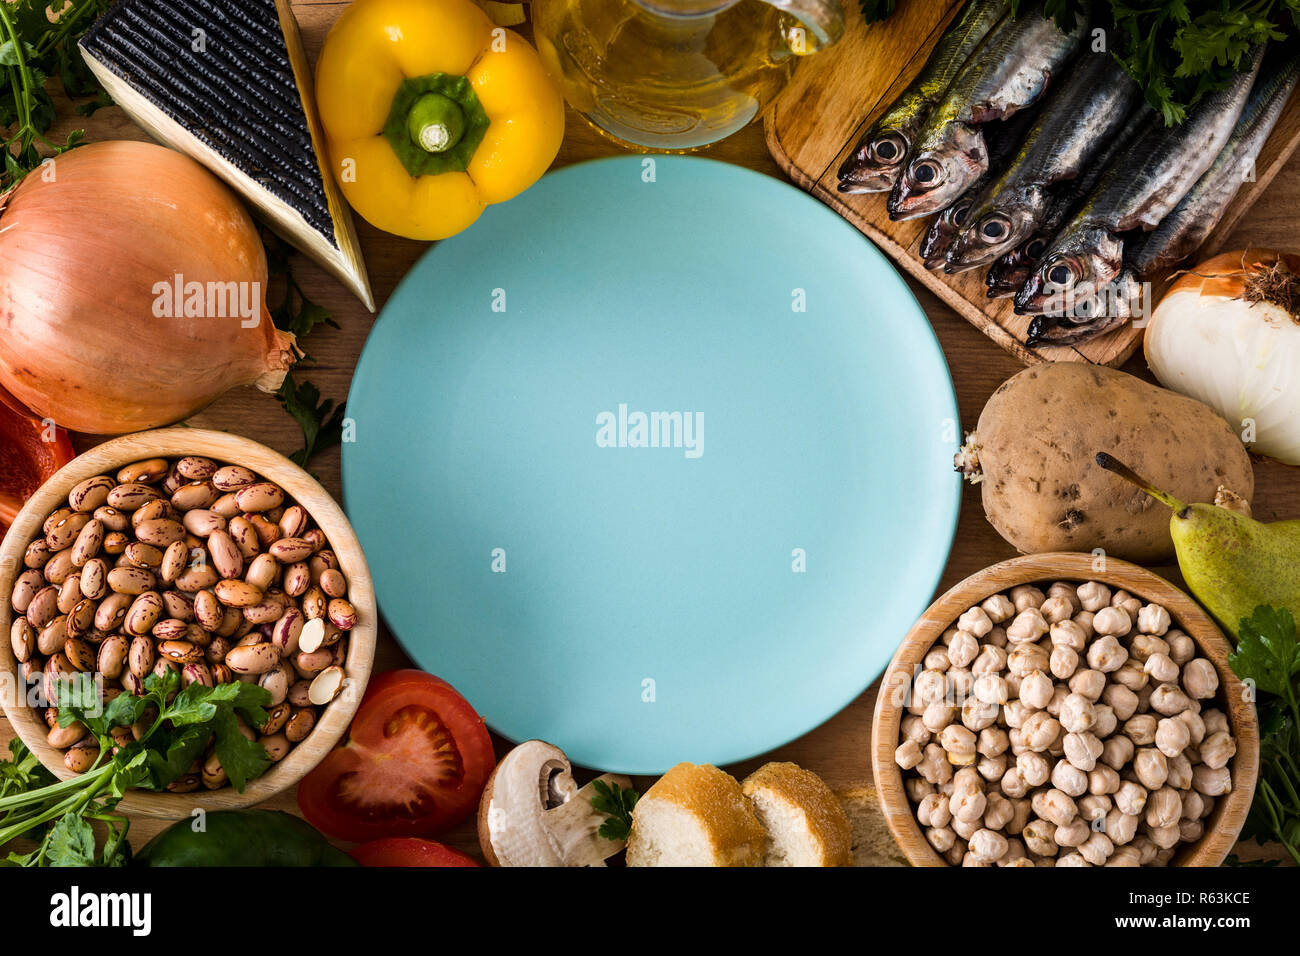 Das gesunde Essen. Mediterrane Ernährung. Obst, Gemüse, Getreide, Nüsse Olivenöl und Fisch auf Holztisch. Ansicht von oben mit Platz auf der Platte kopieren Stockfoto